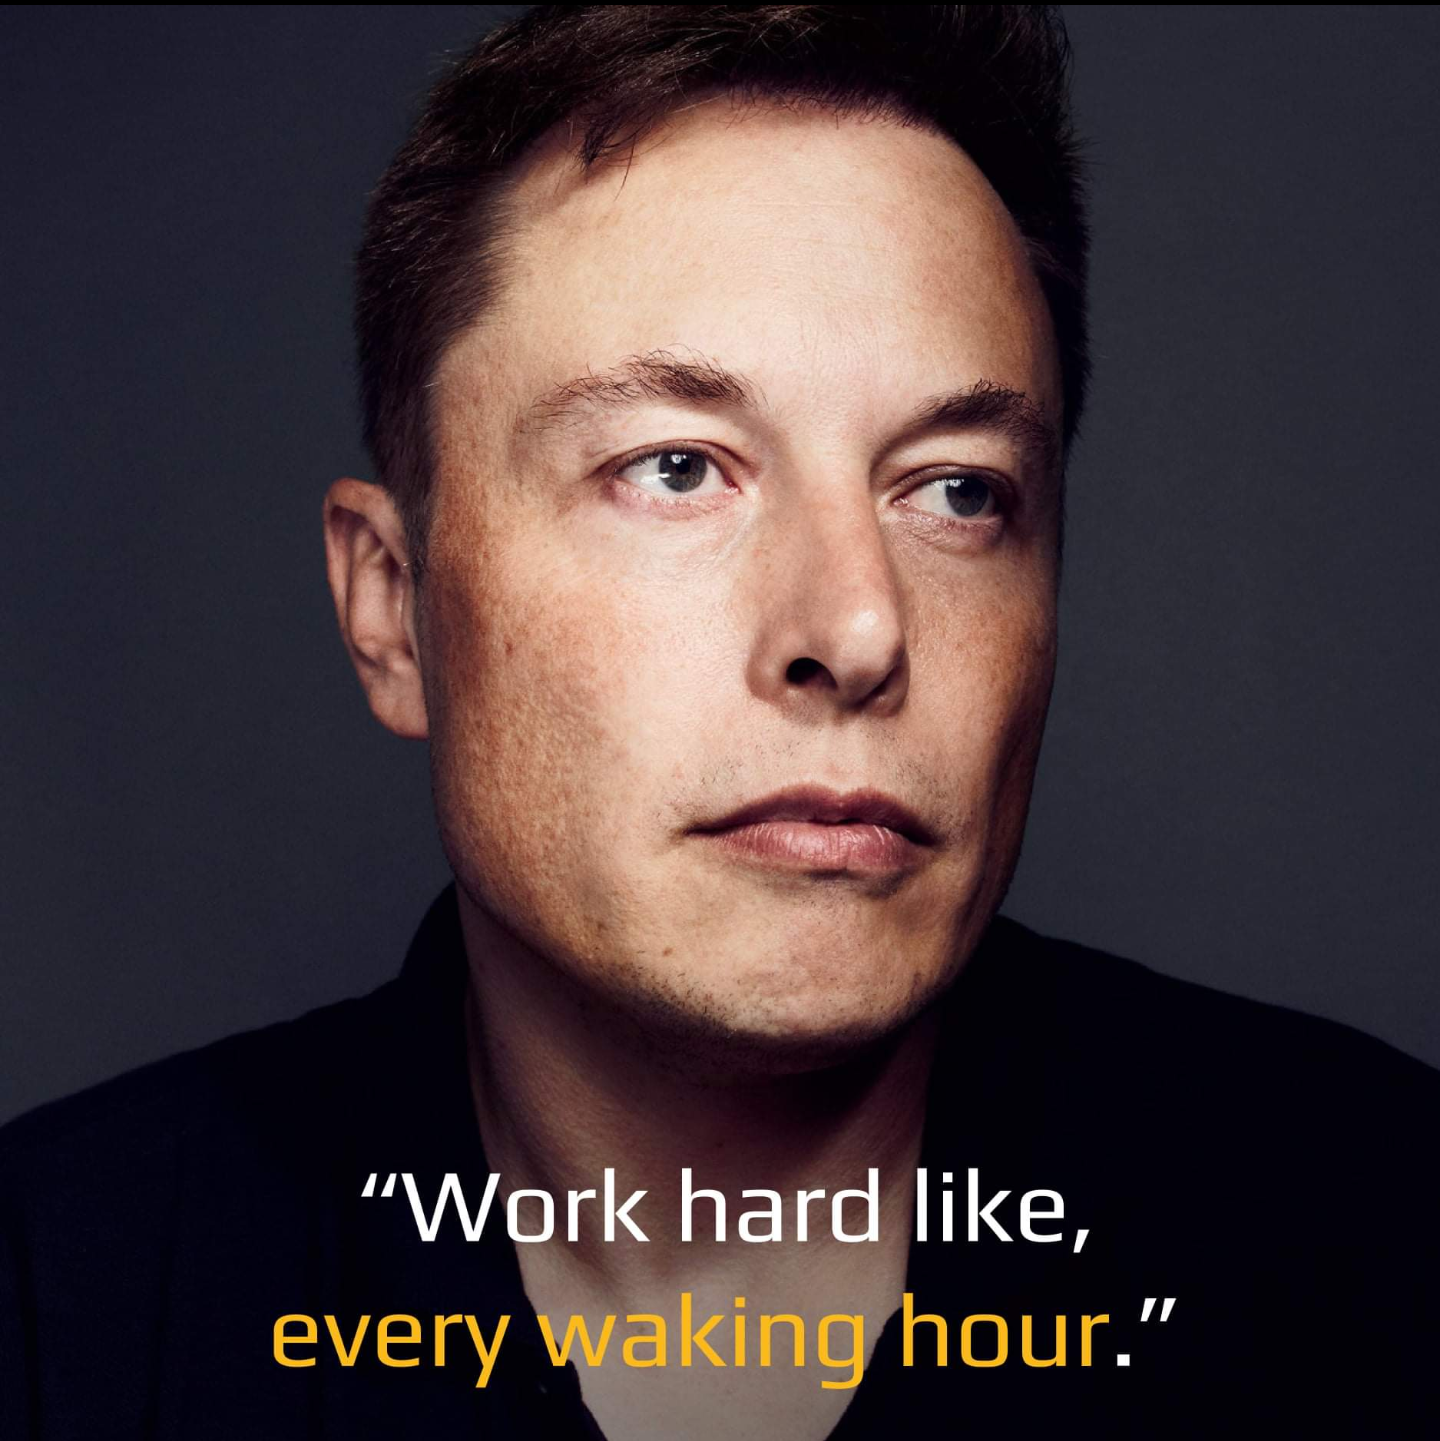 Ta học được gì từ Elon Musk?